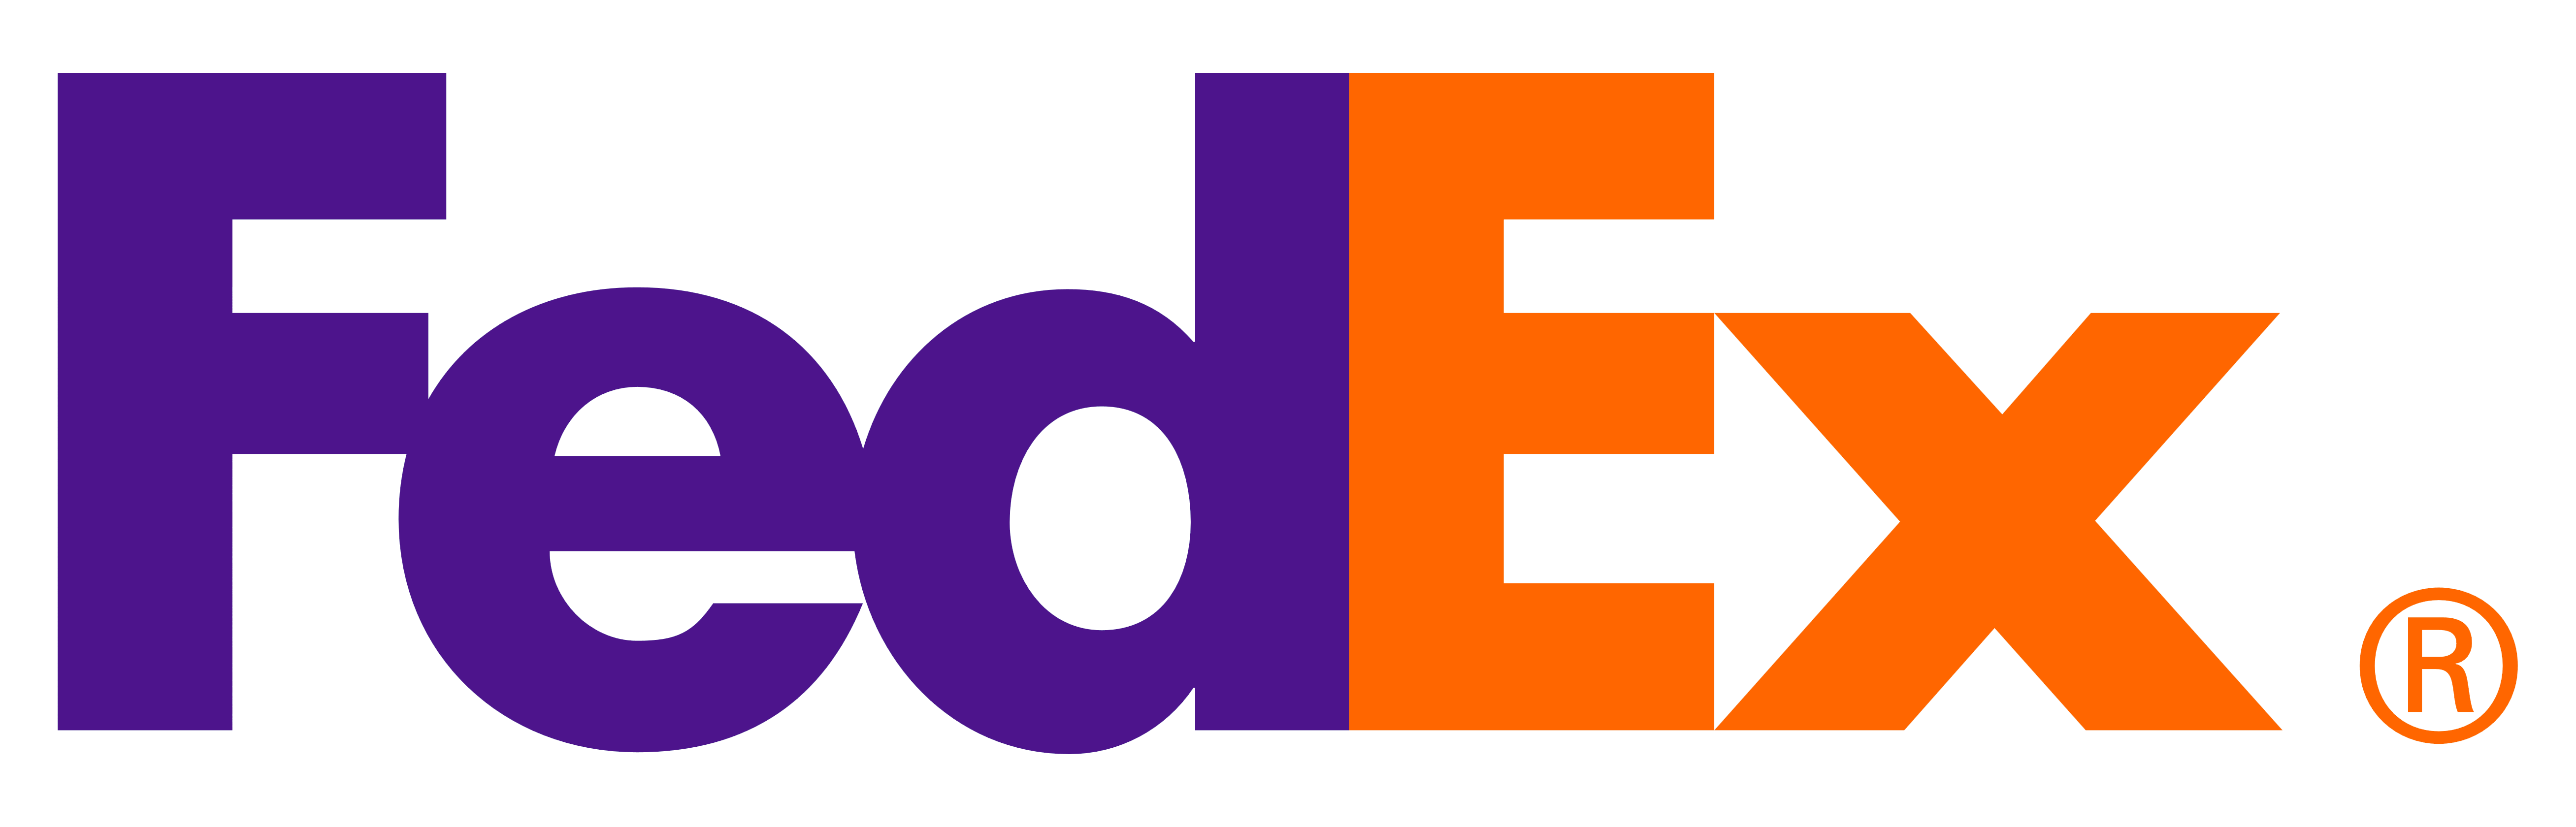 FedEx Office Logo - Fedex office Logos